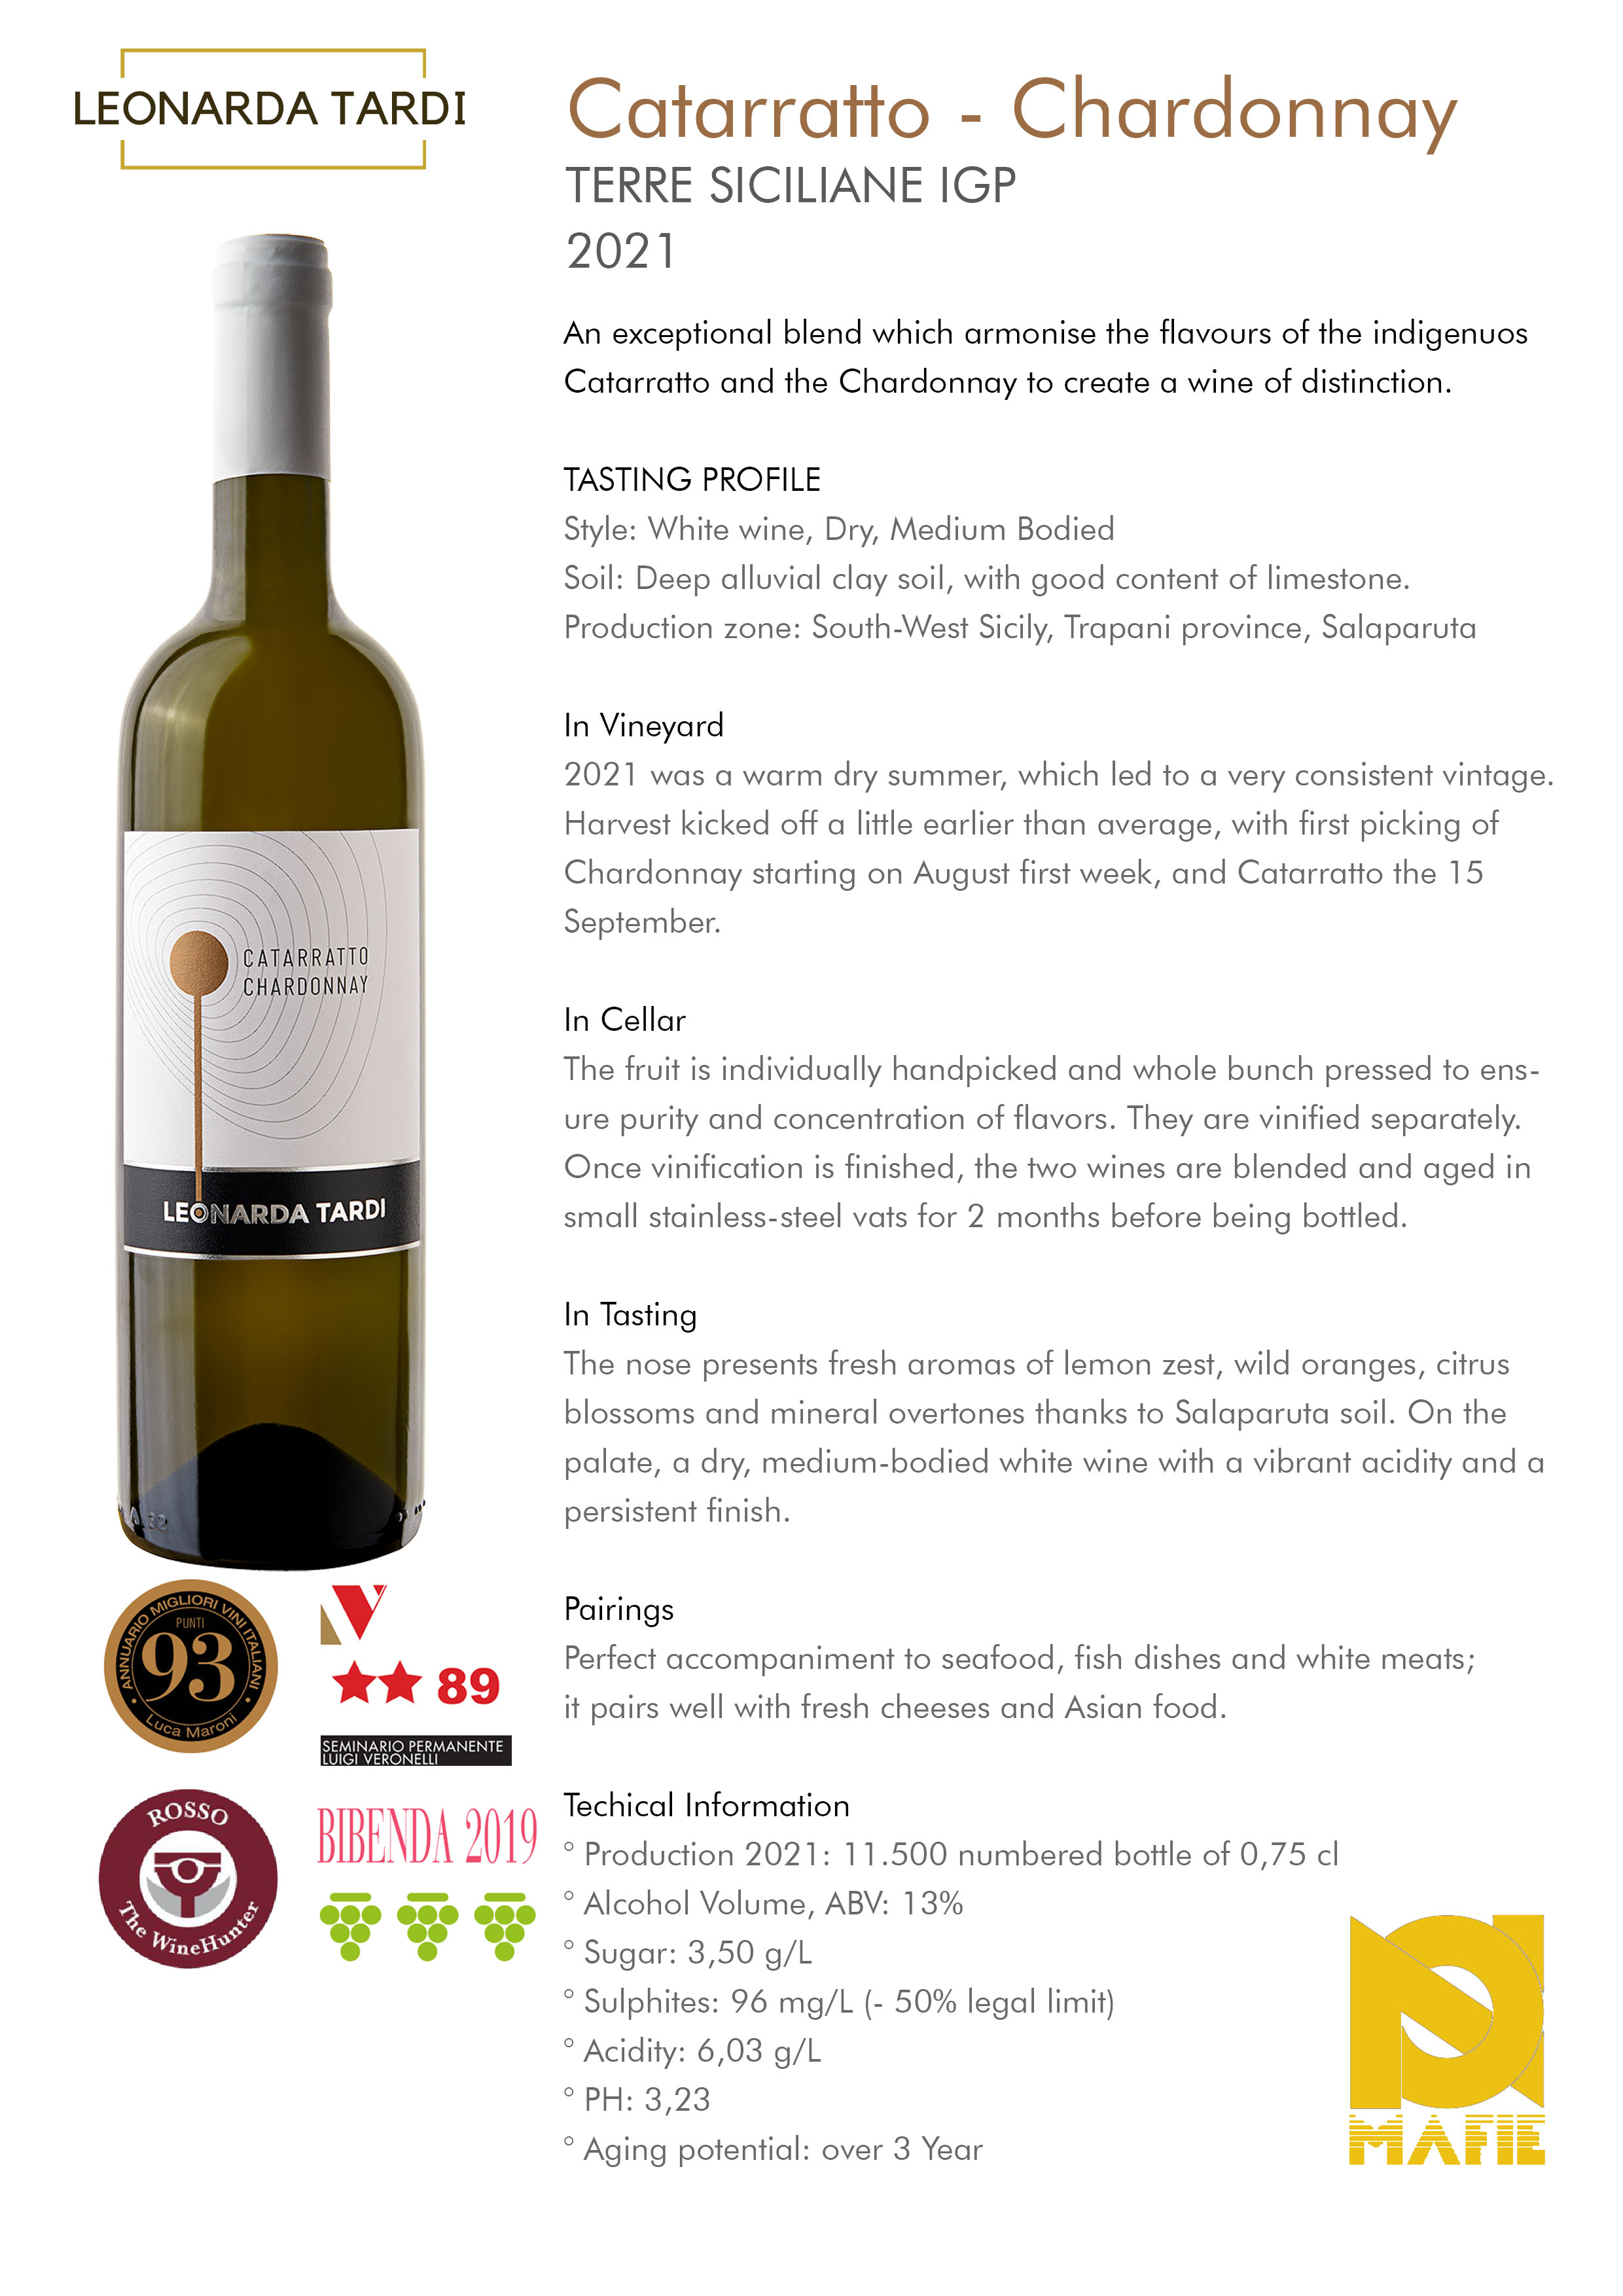 White Wine Catarrato Chardonnay 2021 IGP Terre Siciliane